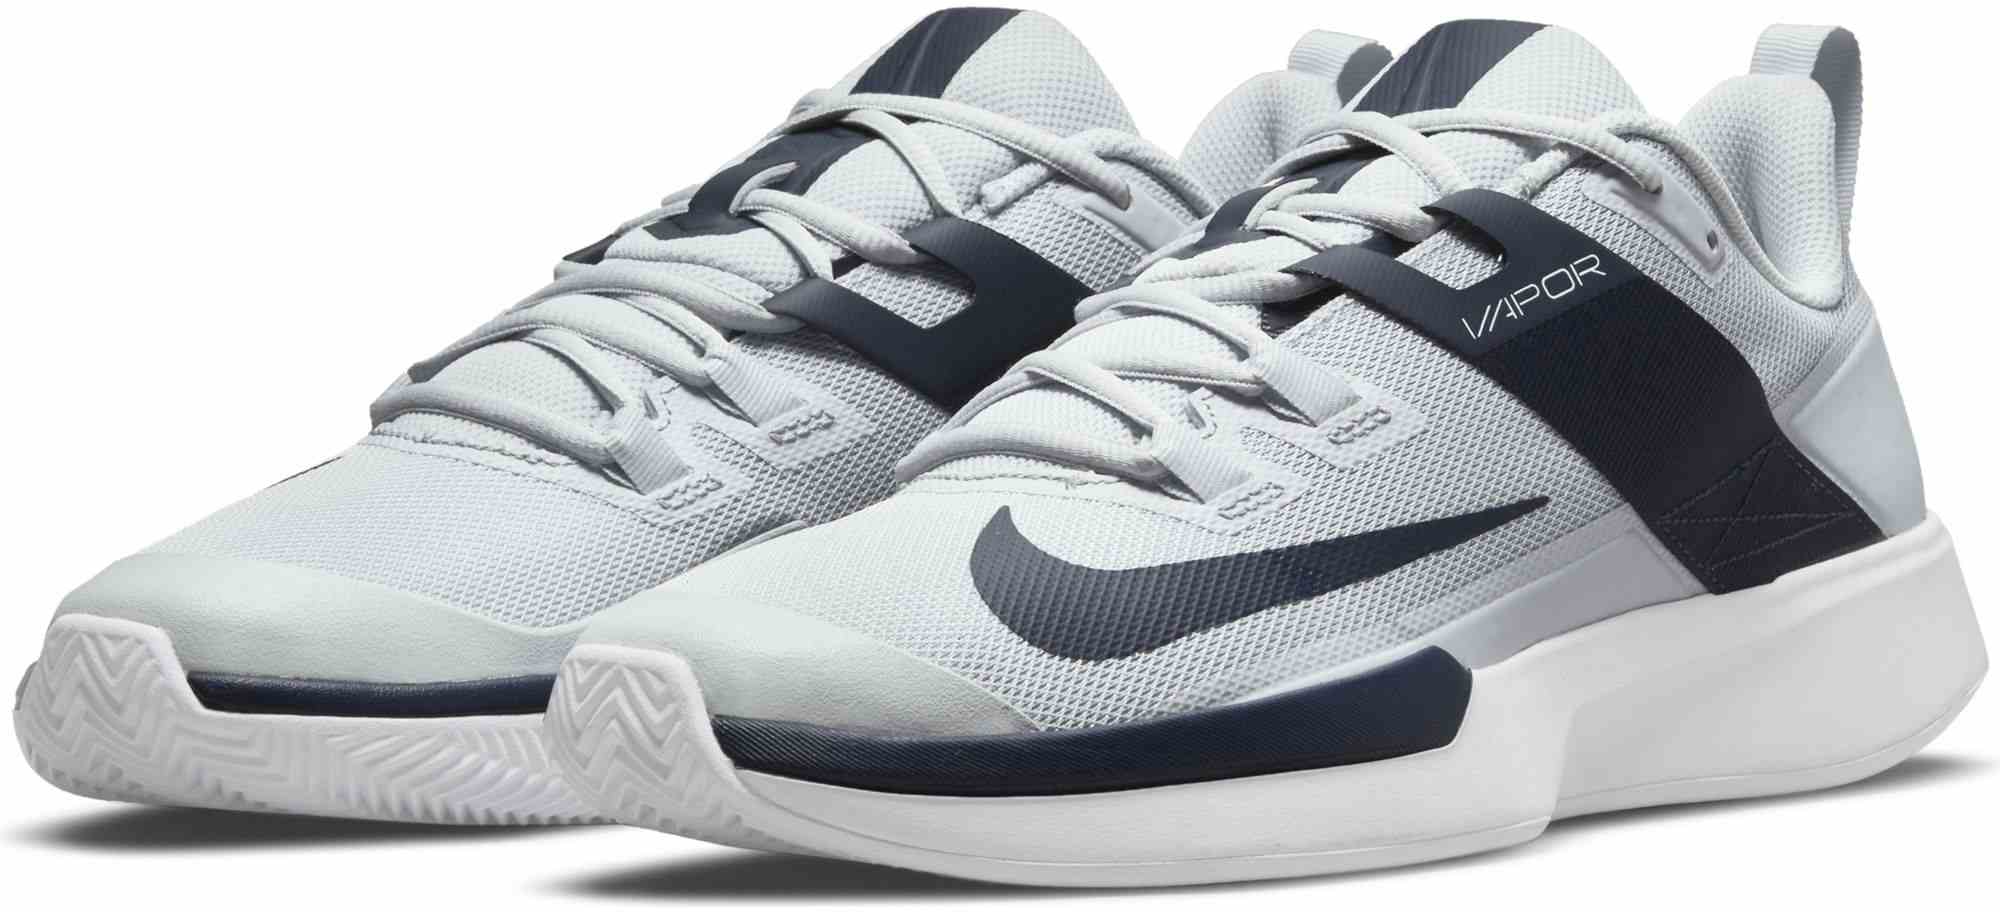 Men’s tennis shoes